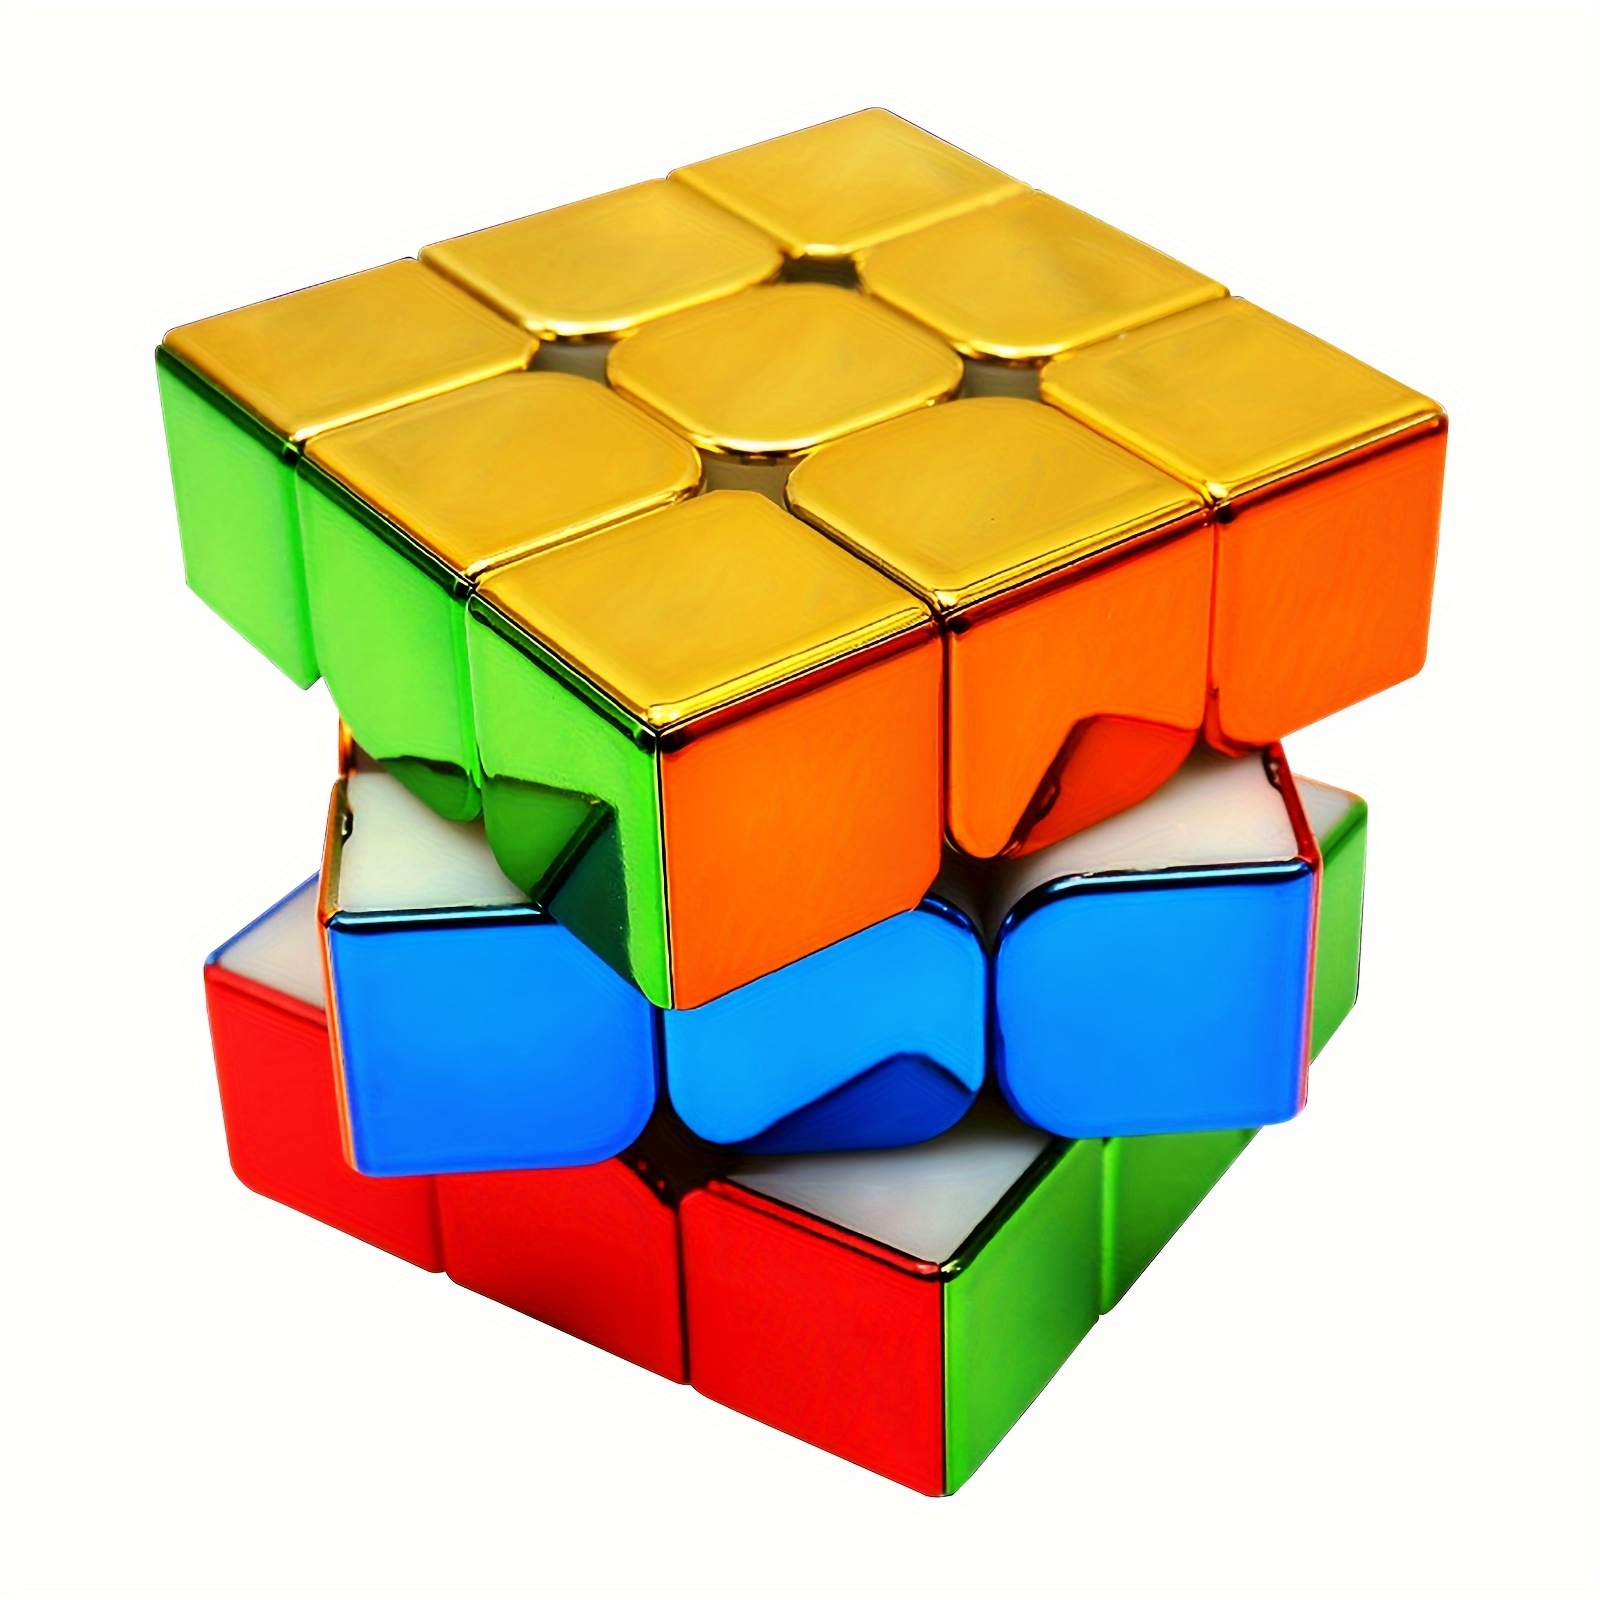 Caixa secreta de cubos mágicos com mealheiro - Diversão e desafio